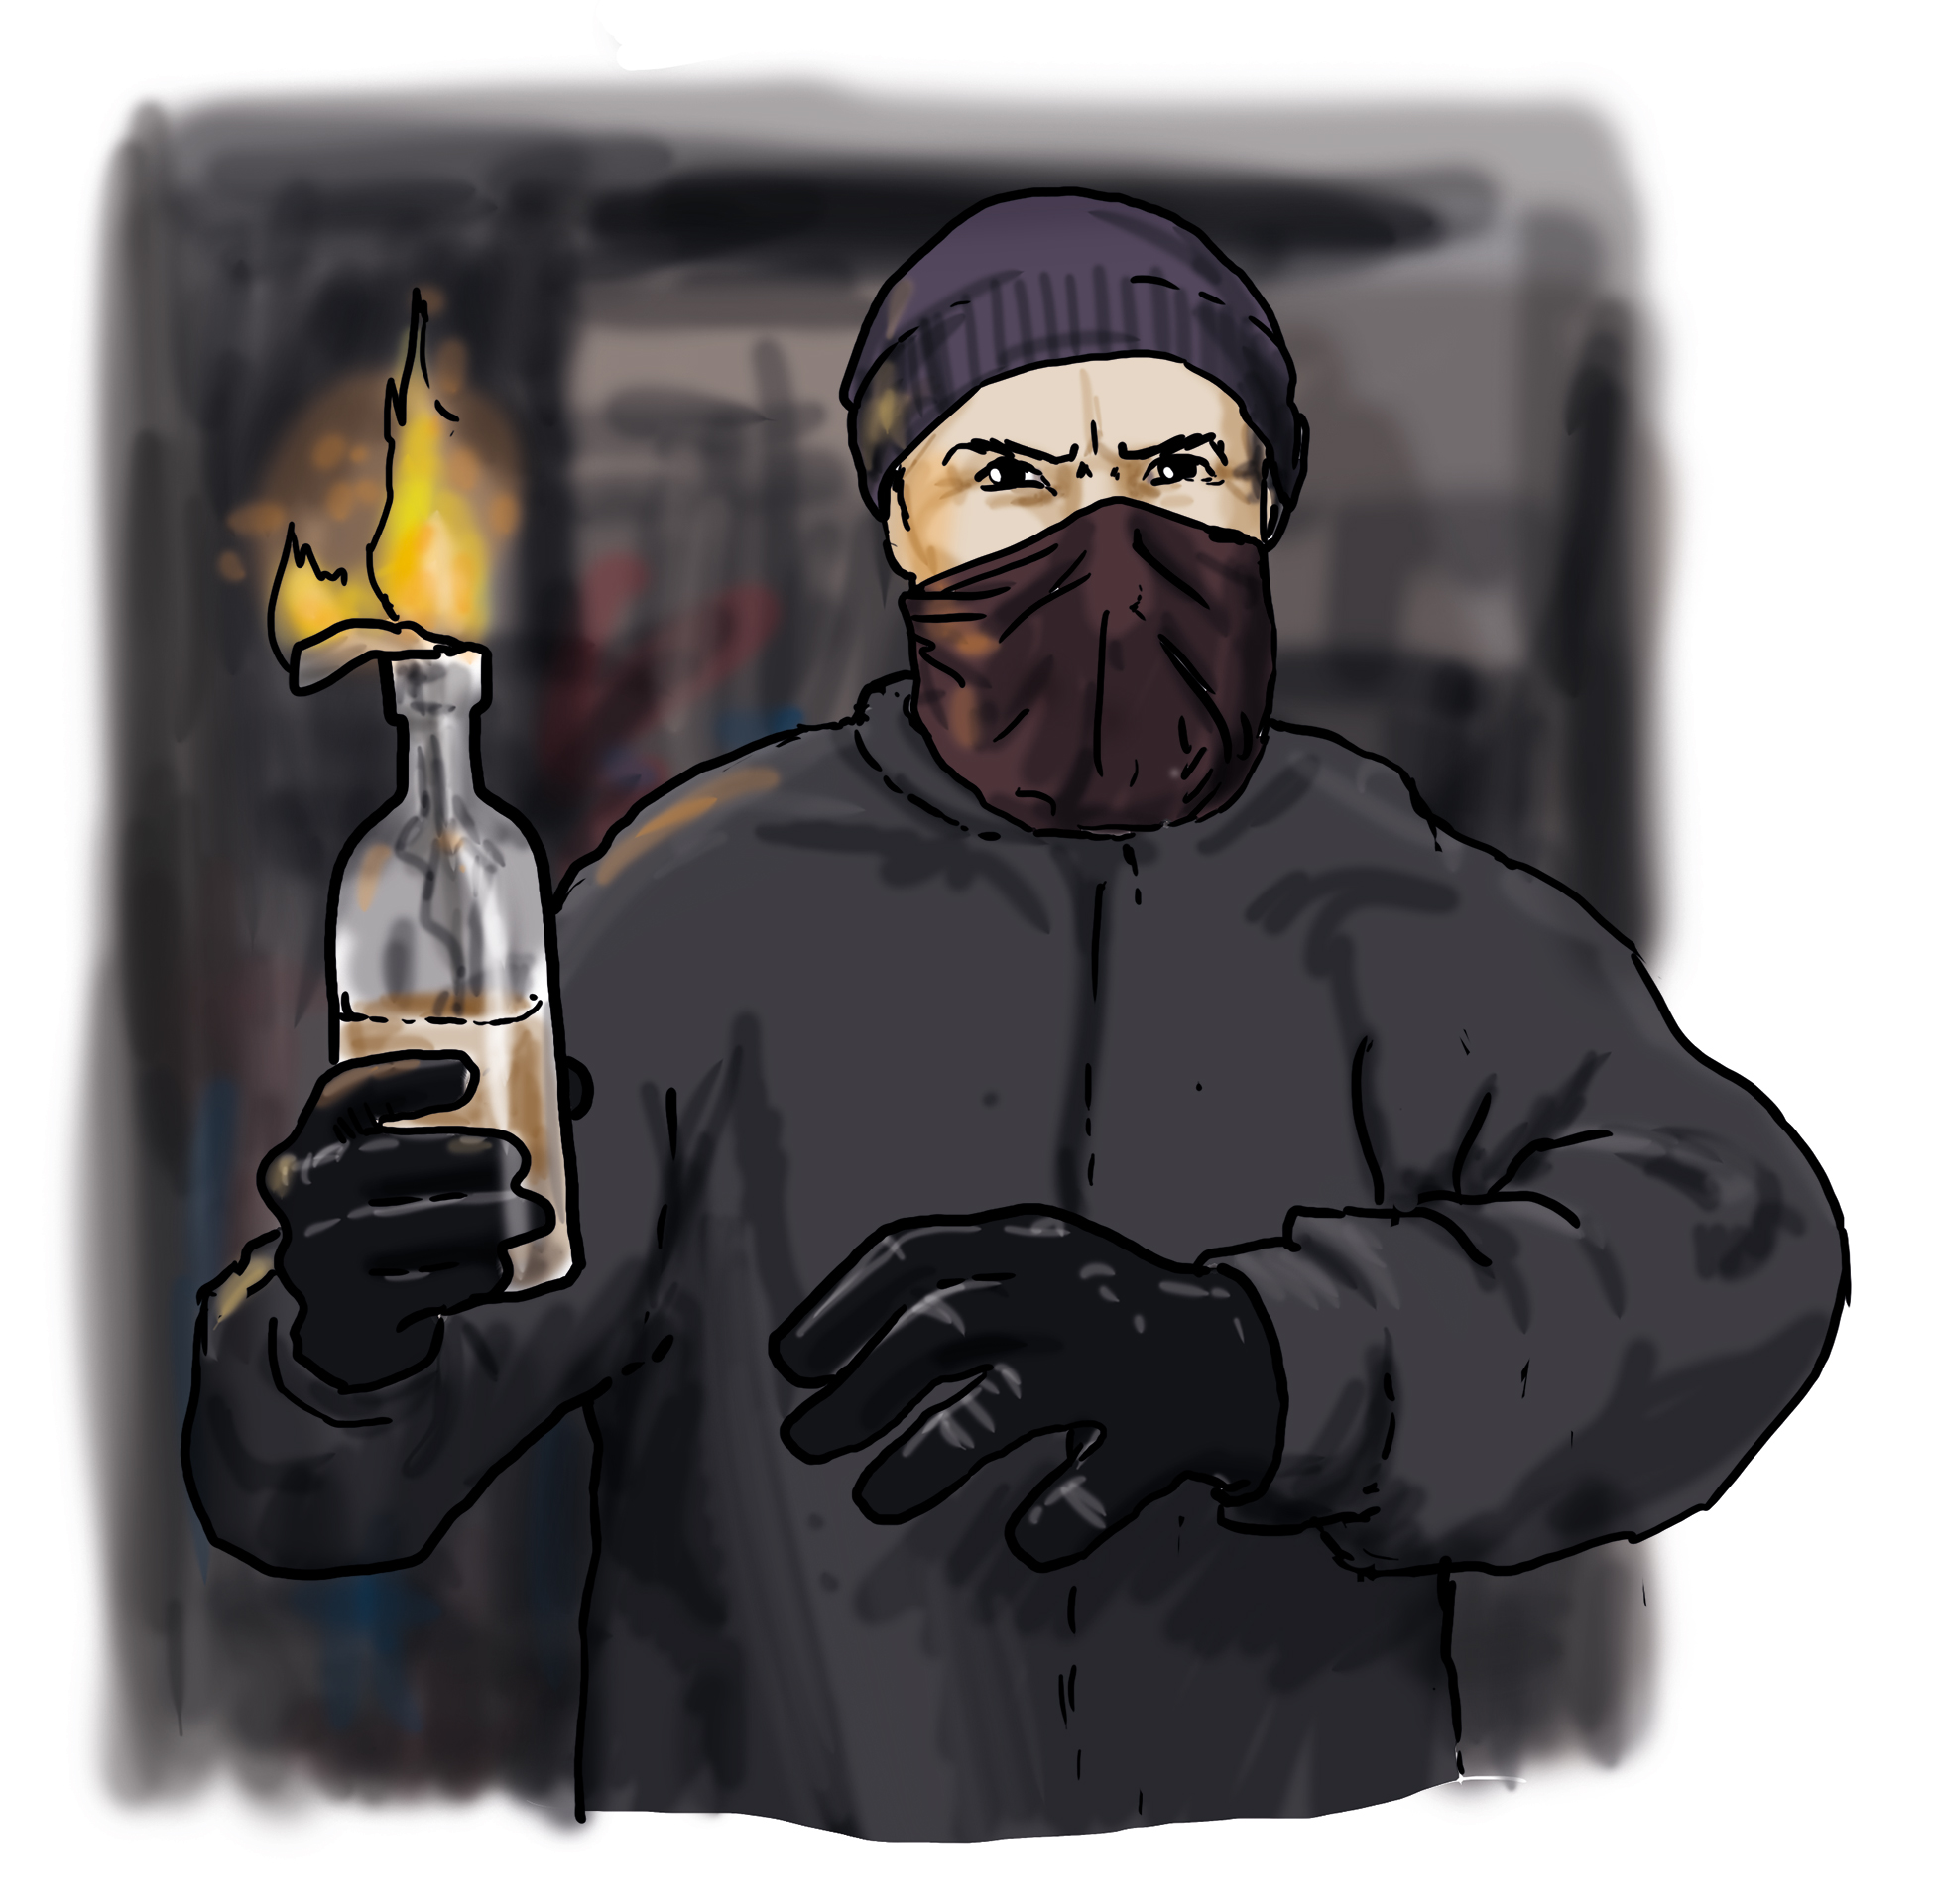 Ein schwarz gekleideter Mensch mit vermummtem Gesicht. Er hält einen brennenden Molotov-Cocktail